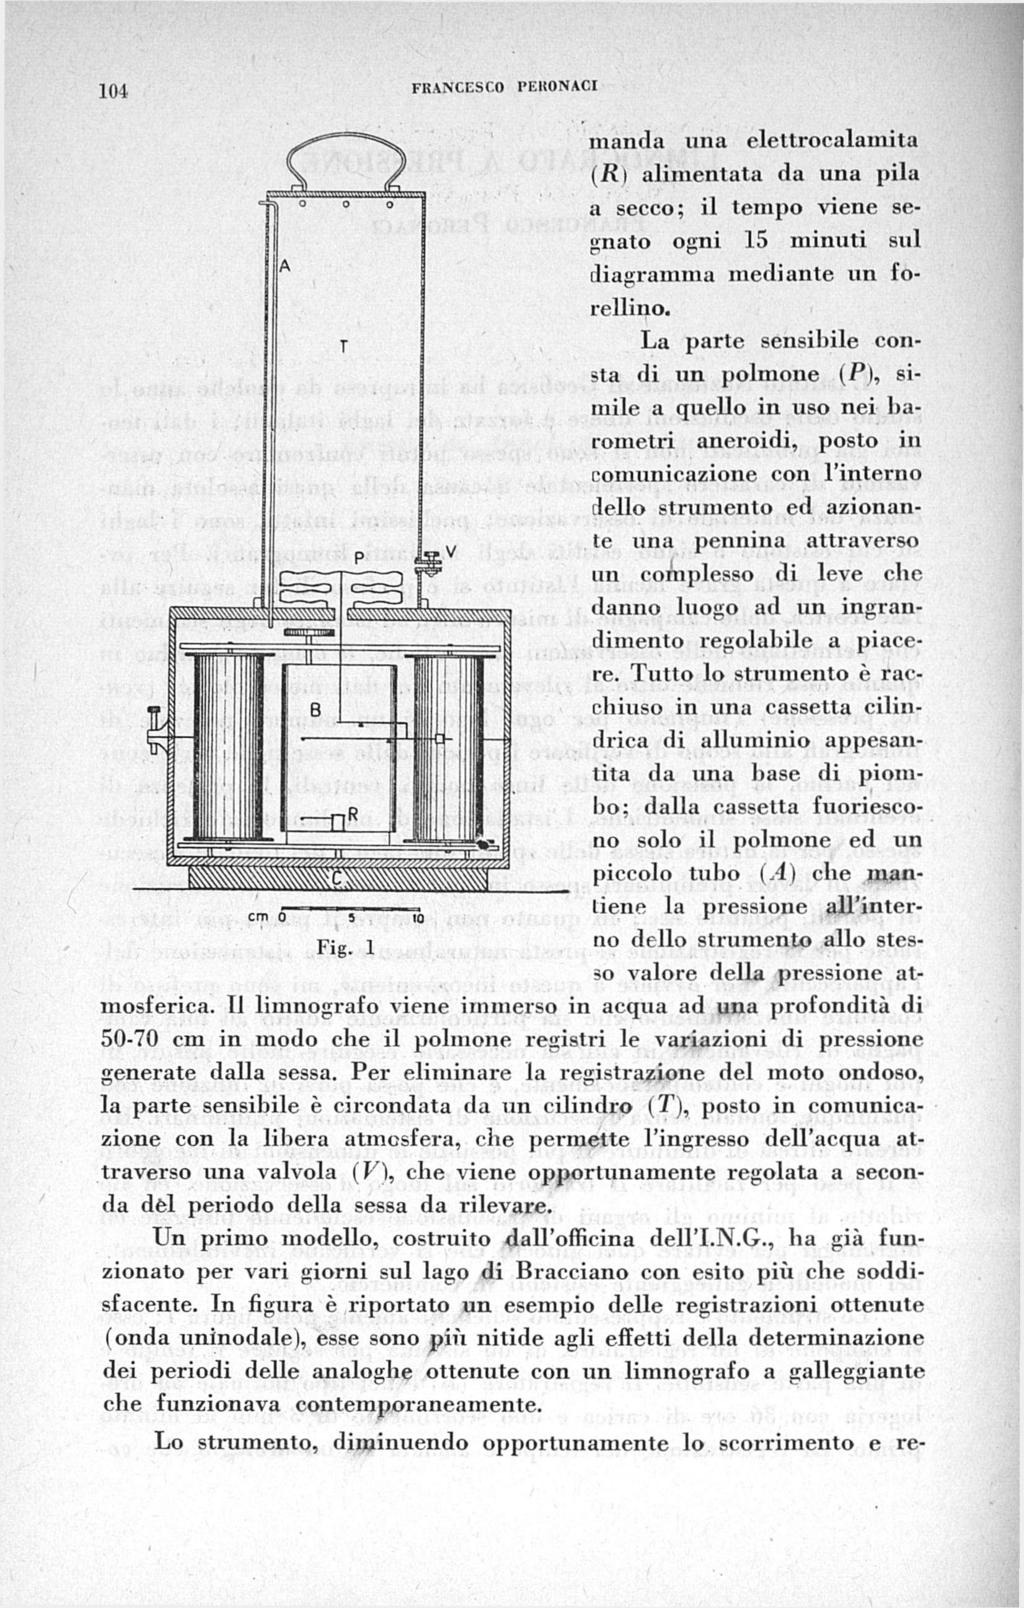 1(11 FRANCESCO PEHONACI manda una elettrocalamita (R) alimentata da una pila a secco; il tempo viene segnato ogni 15 minuti sul diagramma mediante un forellino.